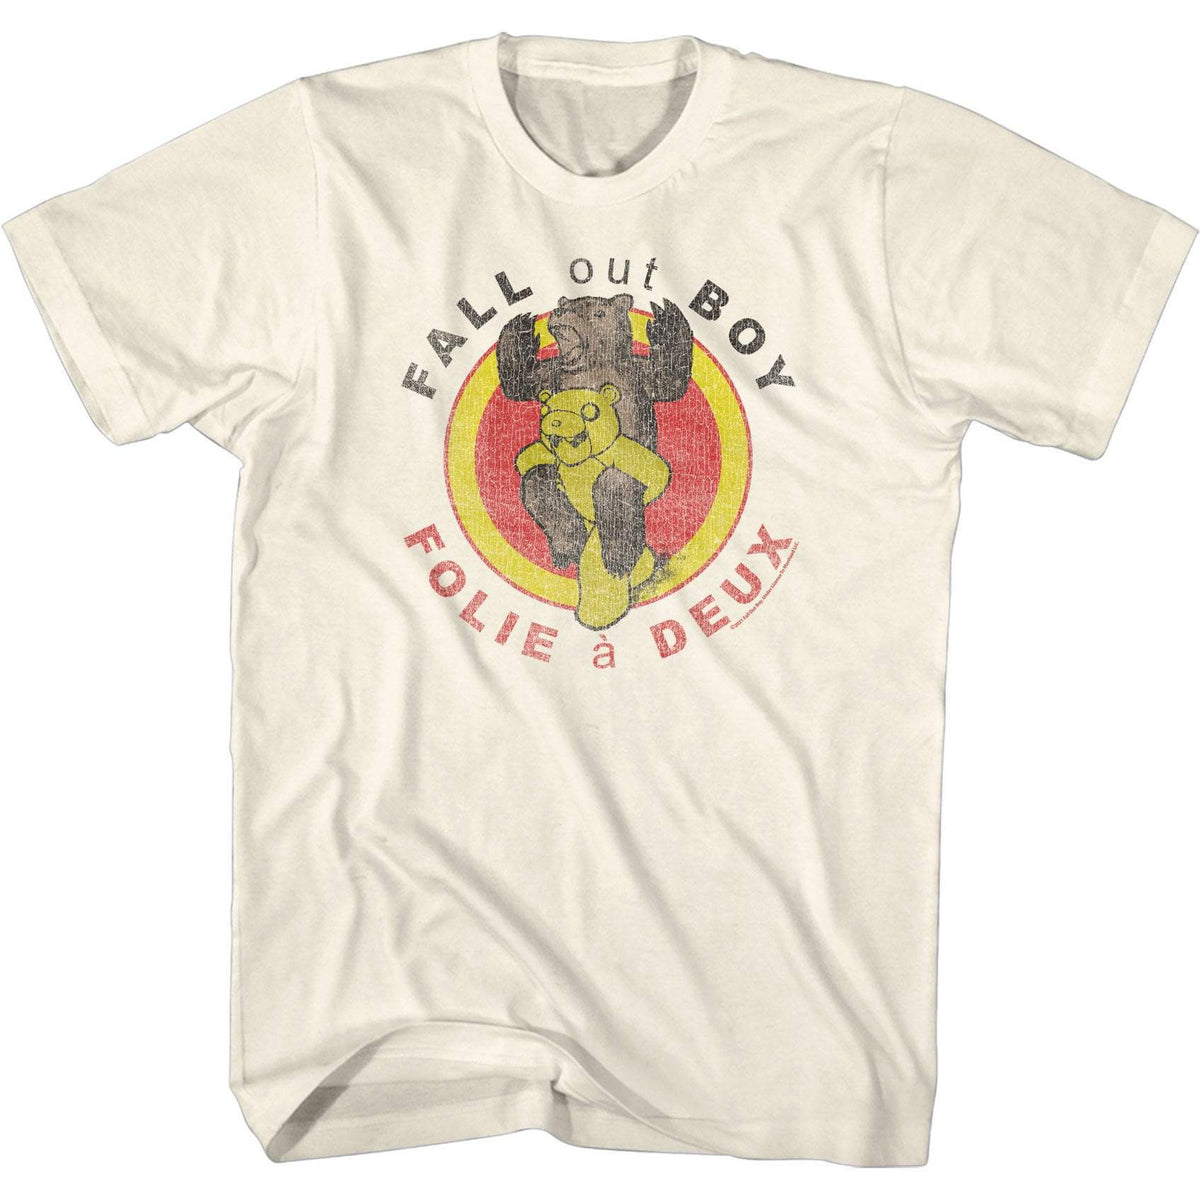 Shirt Fall Out Boy Folie a Deux T-Shirt